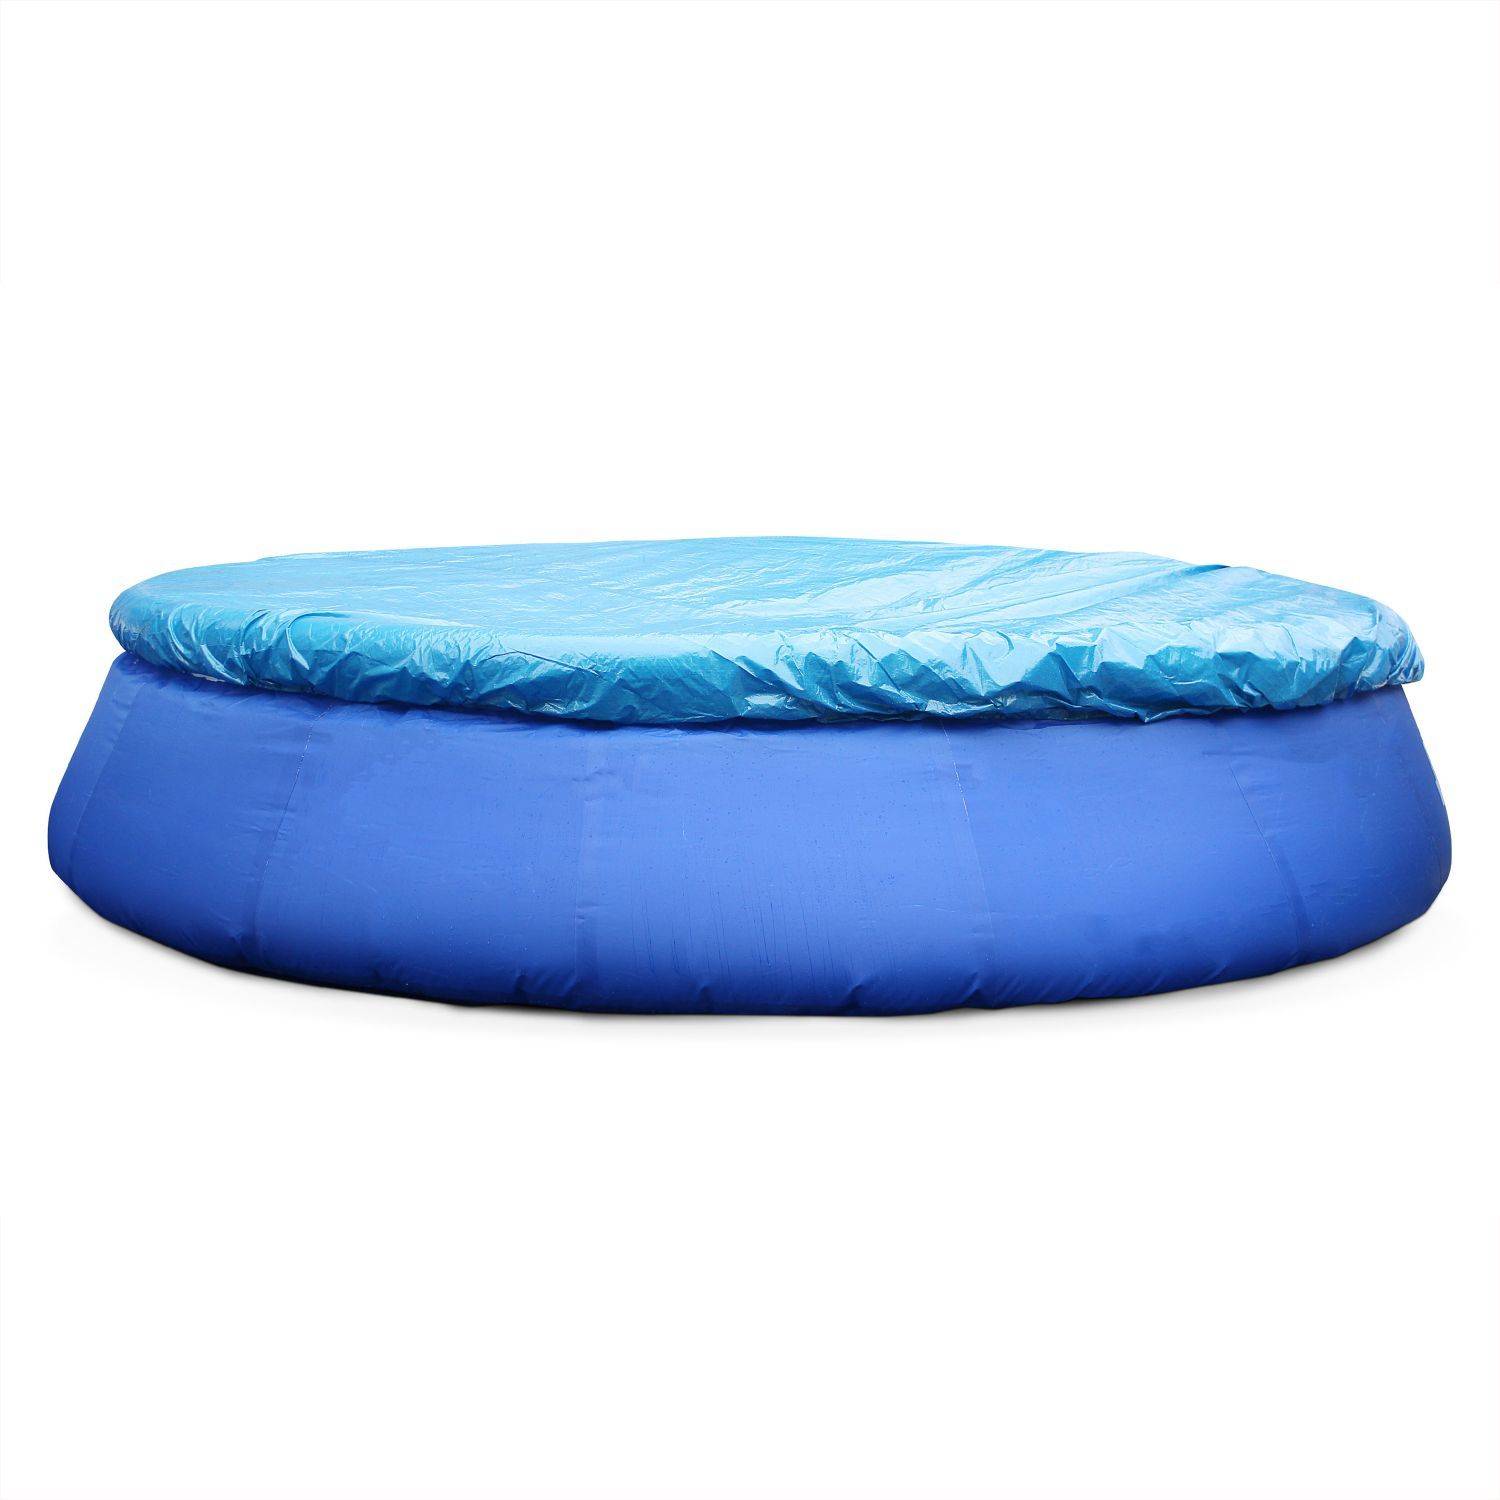 Kit piscine Emeraude gonflable bleue autoportante ronde Ø450x90cm avec pompe de filtration, bâche de protection, tapis de sol et échelle, piscine hors sol autostable Photo4